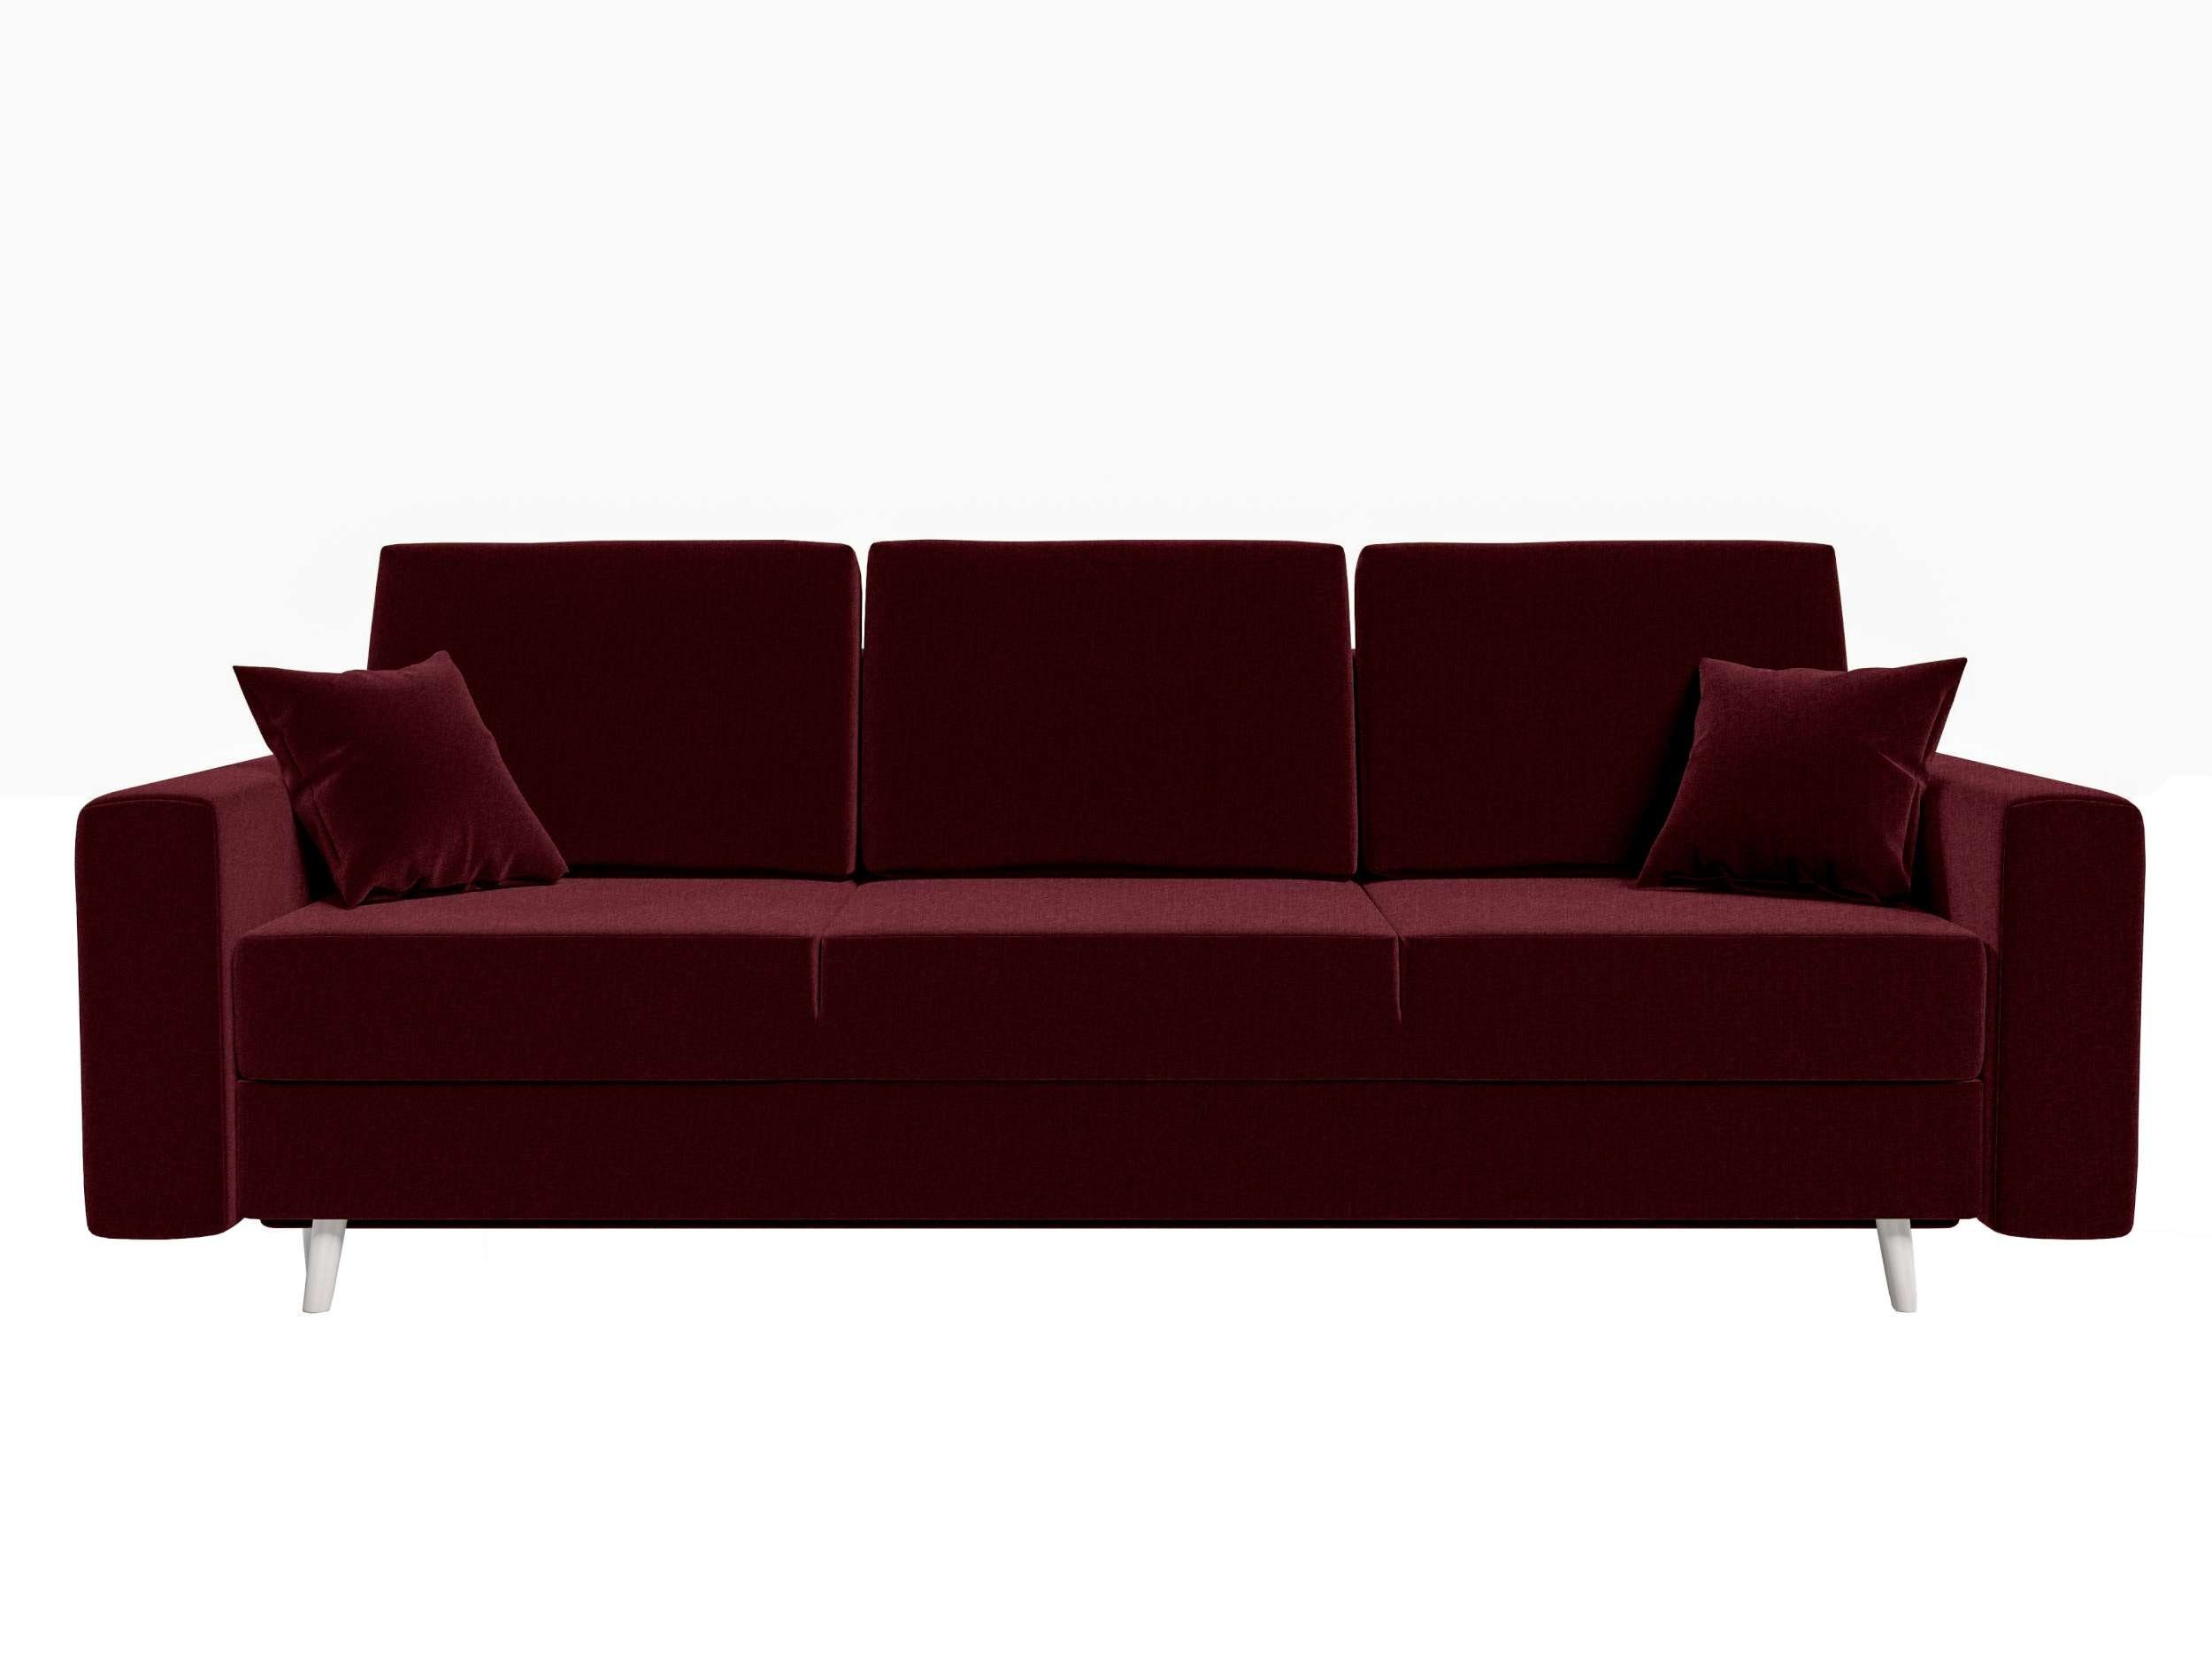 Stylefy 3-Sitzer Bettfunktion, Bettkasten, Modern mit Schlafsofa, Carmen, Design Sitzkomfort, Sofa, mit